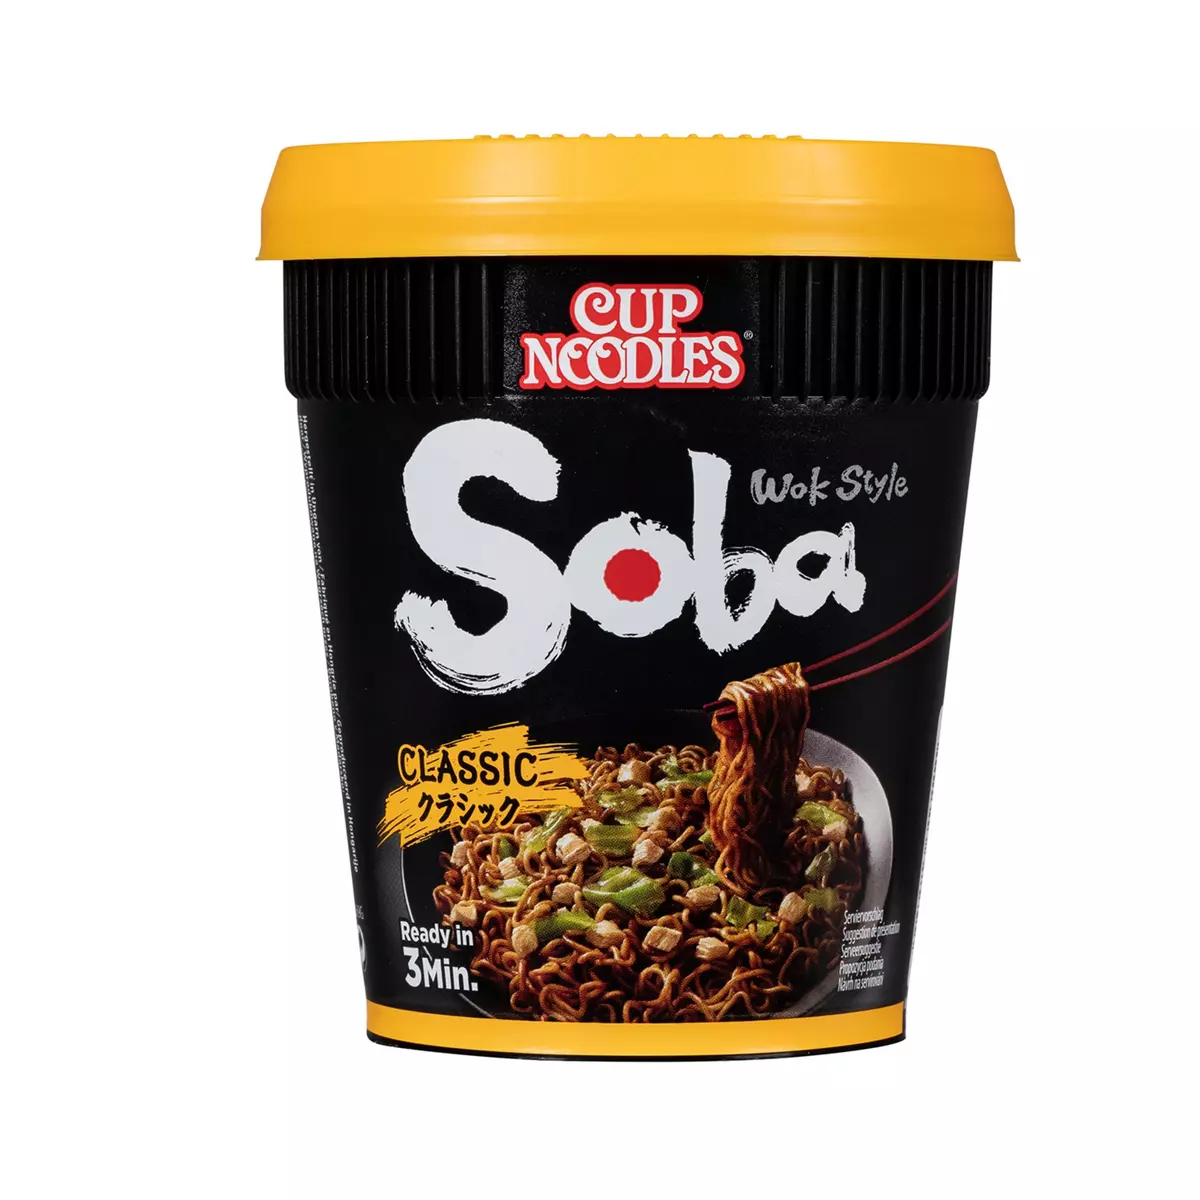 NISSIN Cup nouilles soba classique prêt en 3 min 1 personne 90g